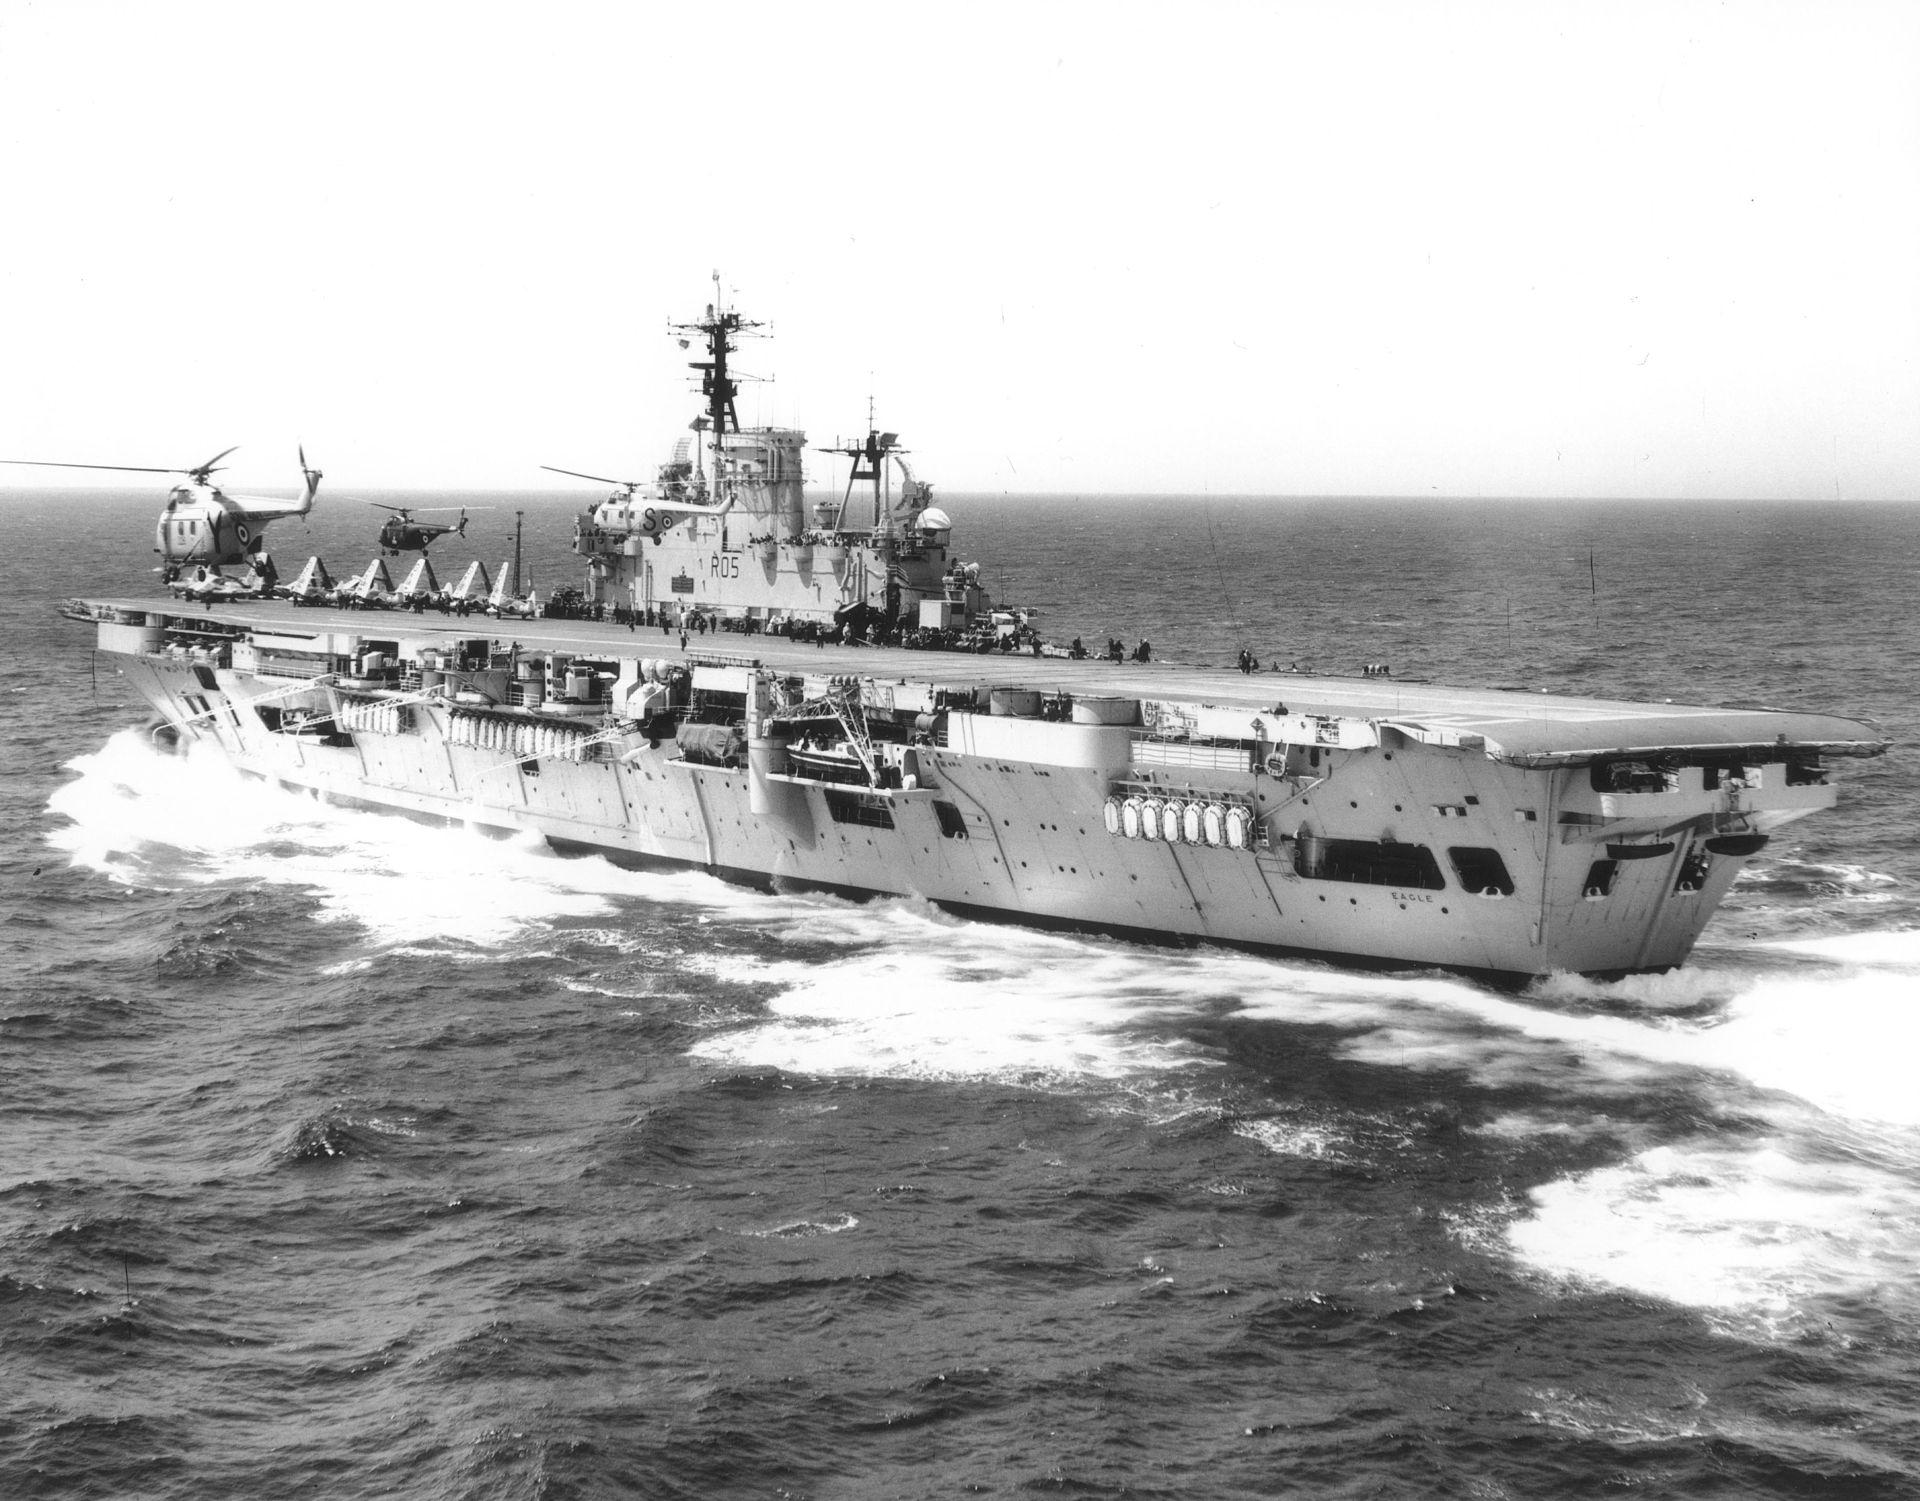 一员,1946年为纪念在马耳他战损的同名舰船从原定的大胆号改名为鹰号